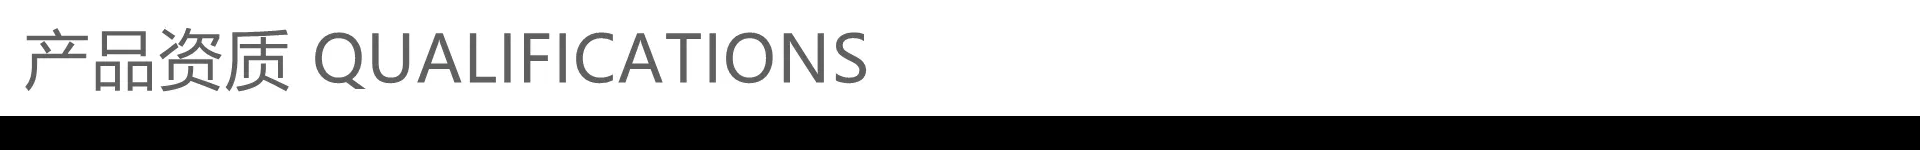 【年抛秒杀】KIRAFAIRY&KiraSecret 梦幻联动 双十二合体大作战 - VVCON美瞳网